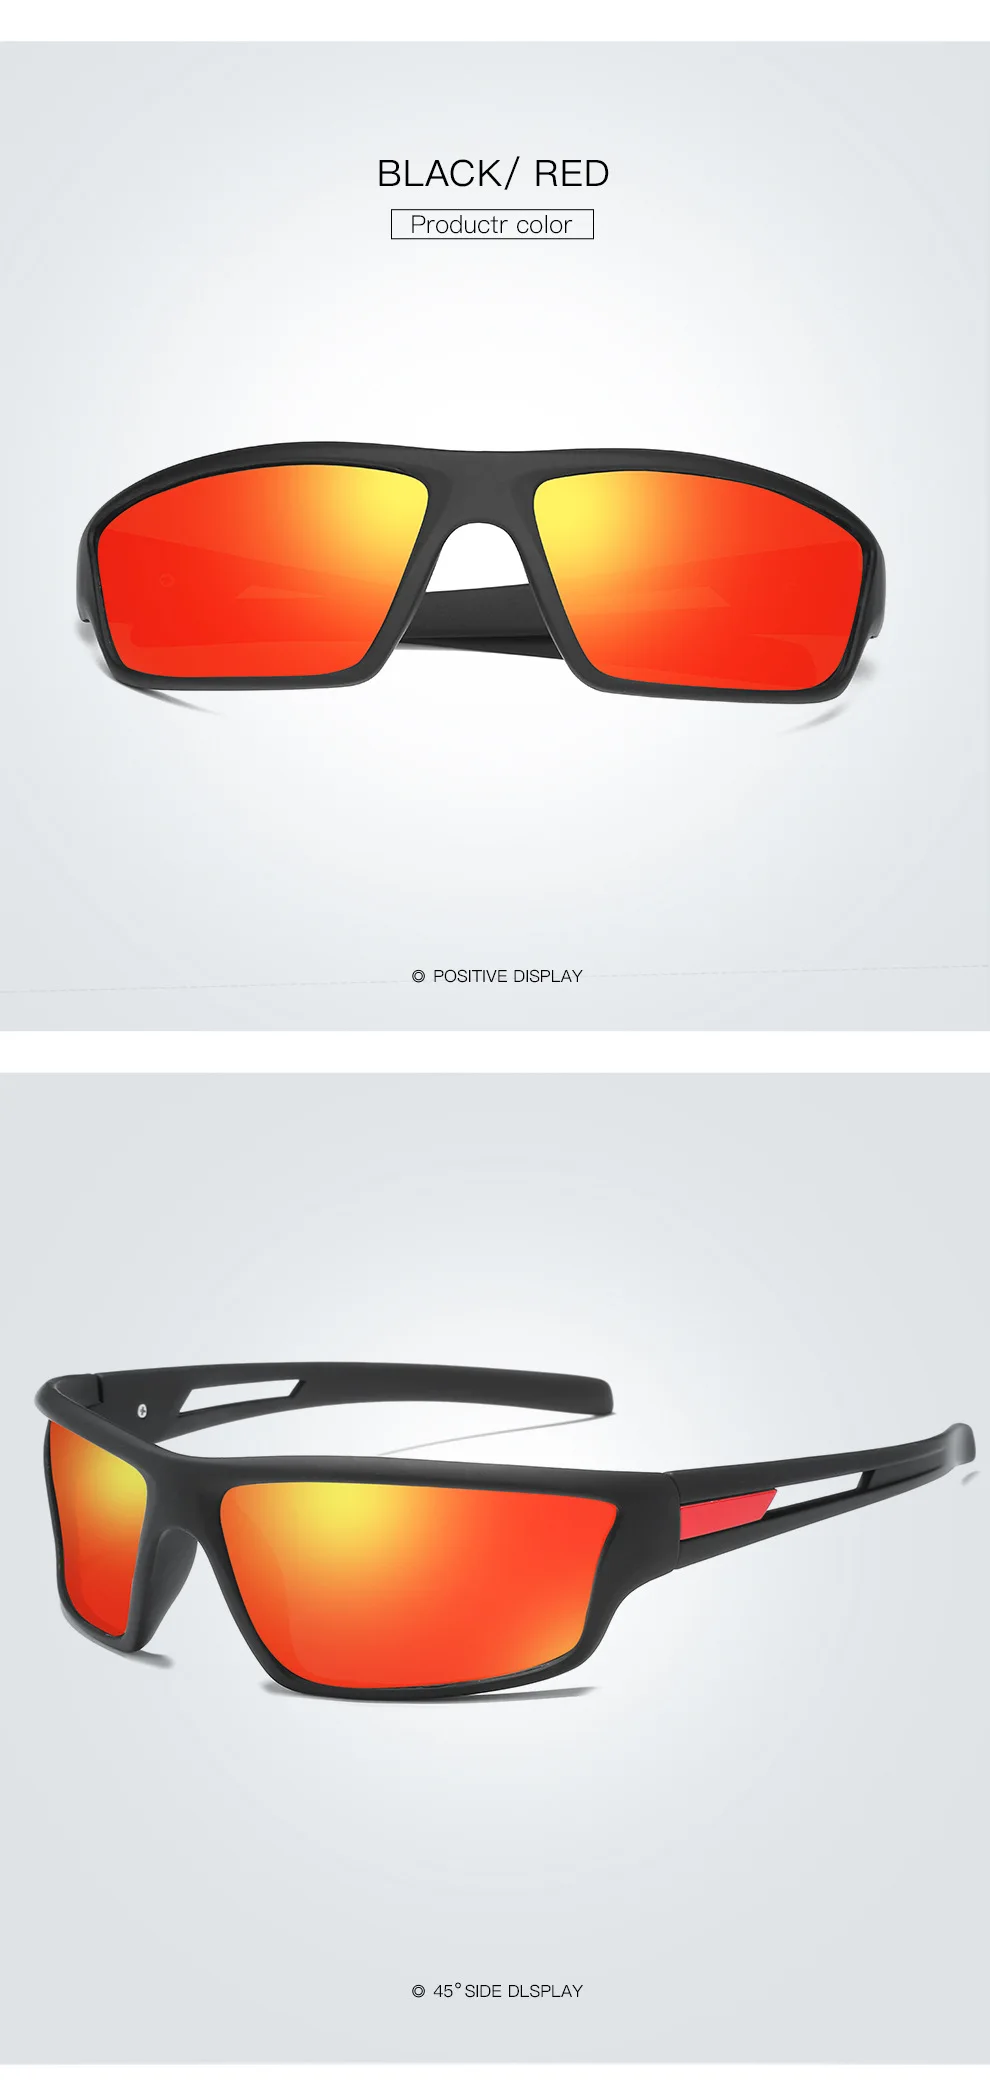 AIELBRO спортивные поляризованные солнцезащитные очки TAC объектив UV400 Открытый велосипед Gafas-Ciclismo очки для рыбалки и вождения велосипед солнцезащитные очки